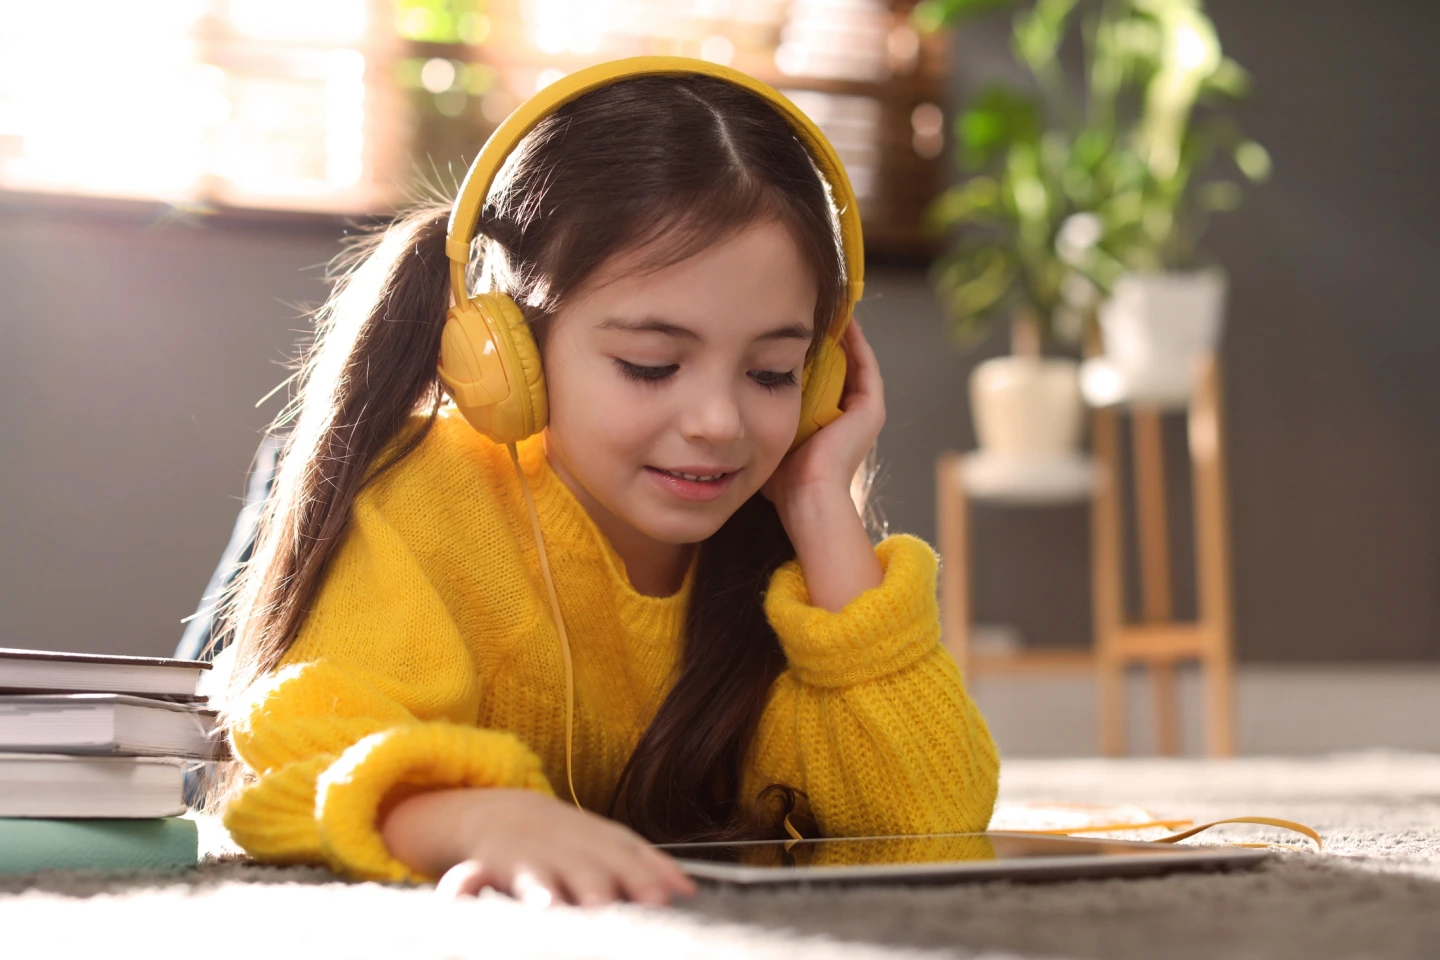 Mädchen mit gelbem Pulli liegt auf dem Boden und hört mit Kopfhörern etwas auf ihrem Tablet an